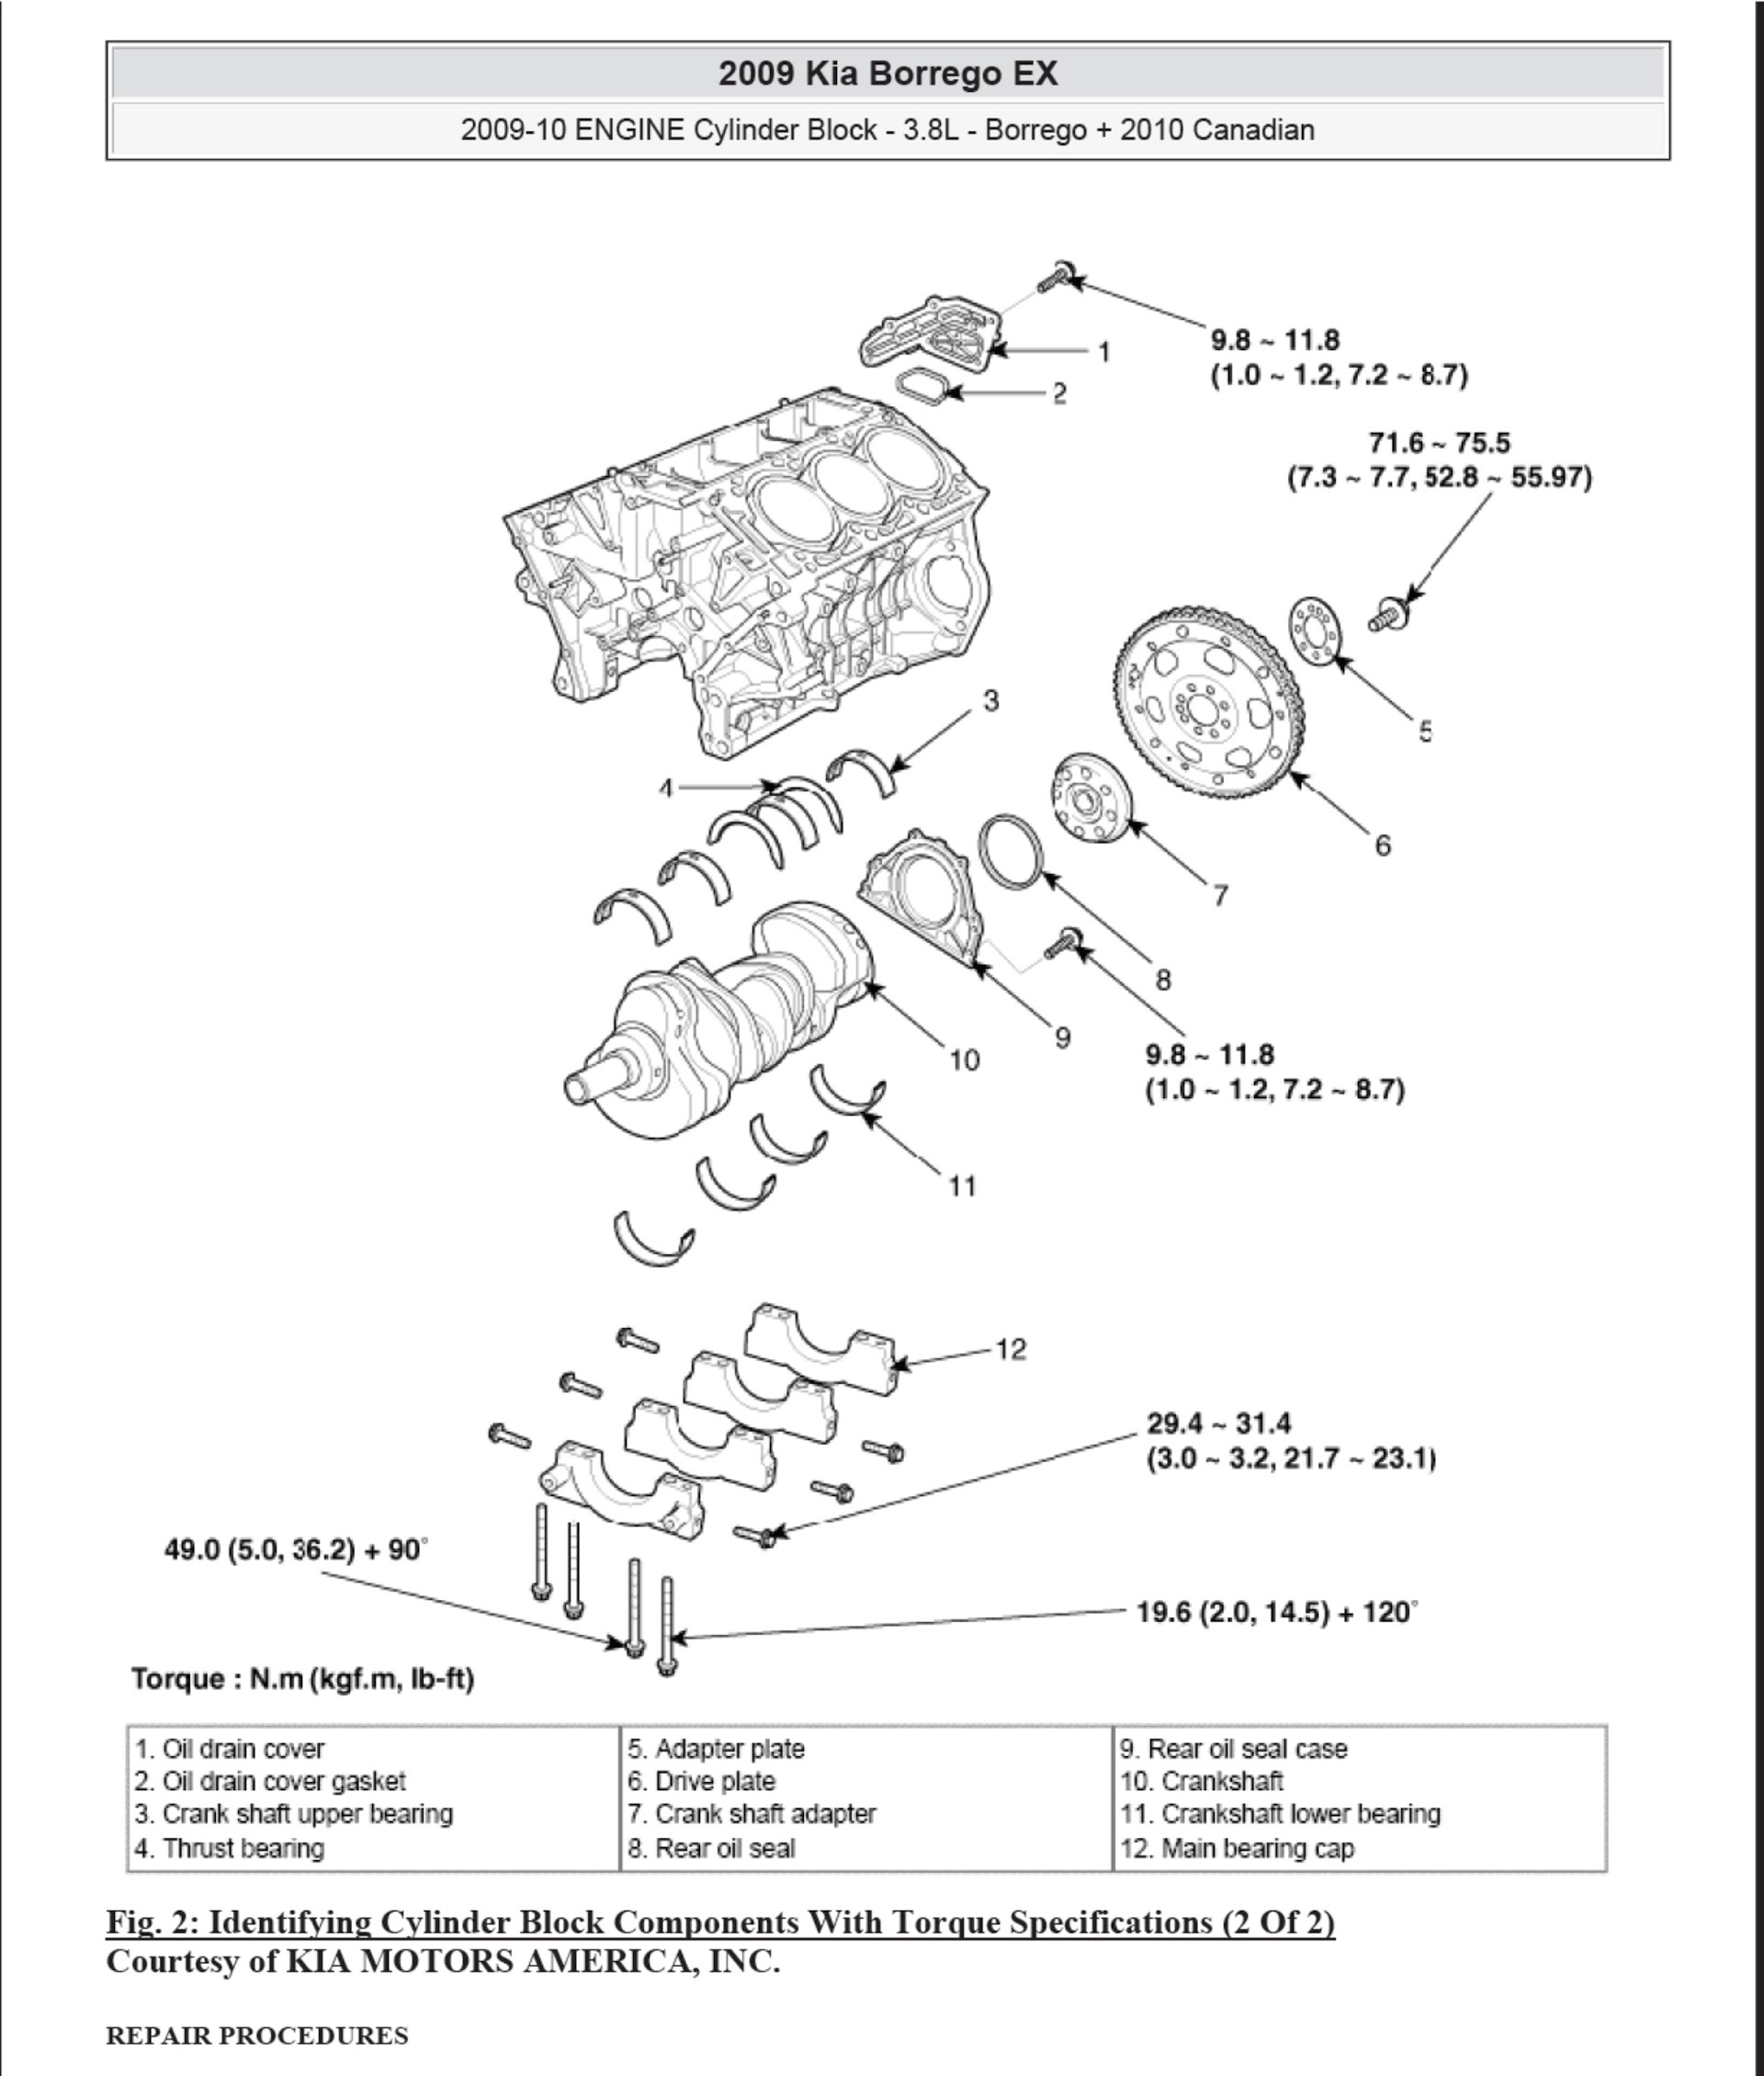 2008-2010 Kia Borrego repair manual